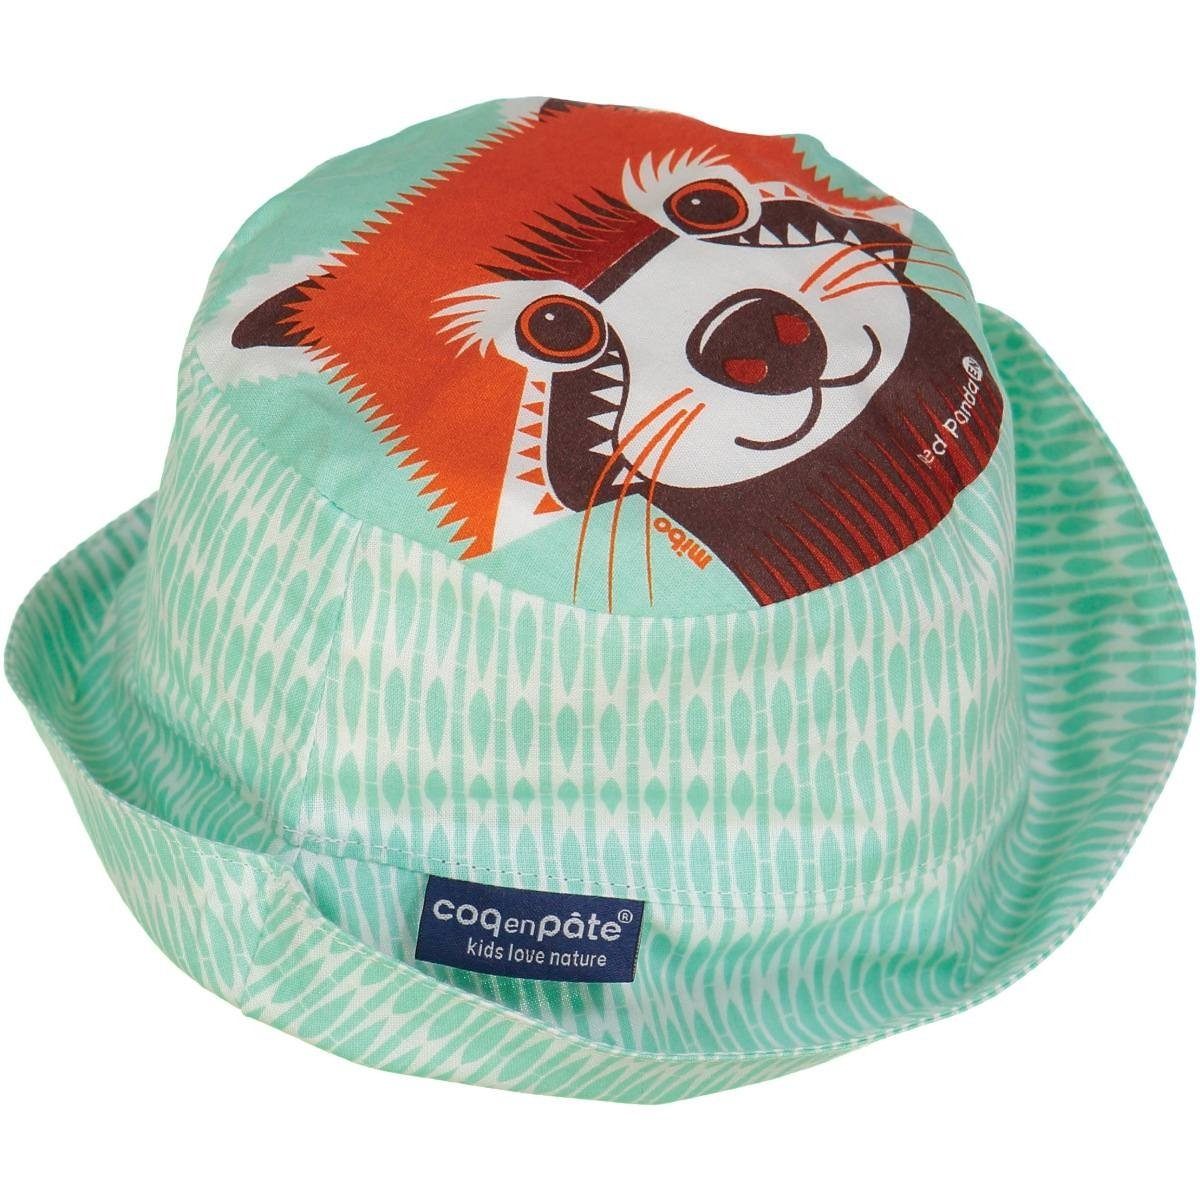 COQ EN PATE Sonnenhut Farbenfroher Kinder-Hut mit Tiermotiven und Mustern Sonnenschutz Roter Panda - Größe: M